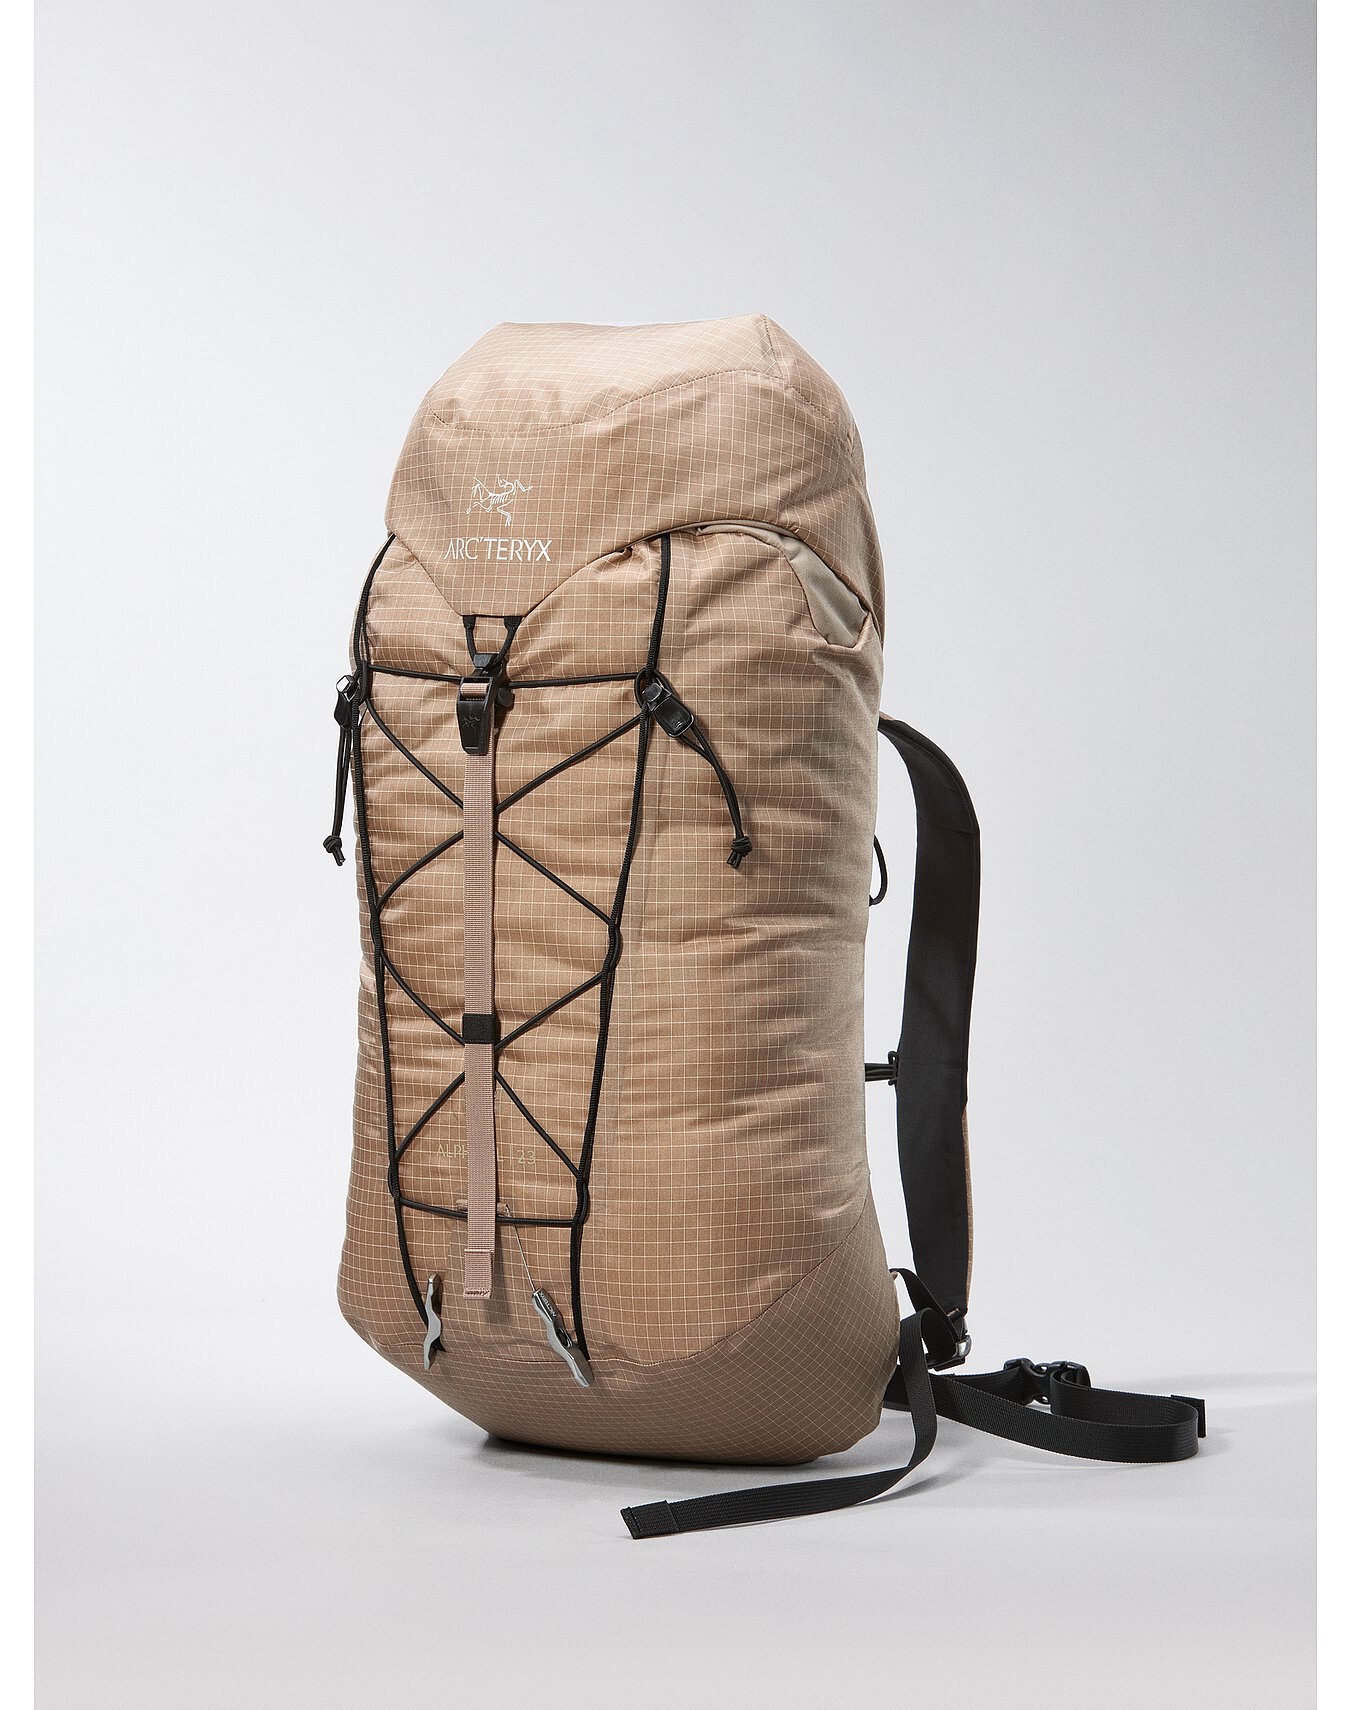 Alpha SL 23 Backpack | Arc'teryx Outlet